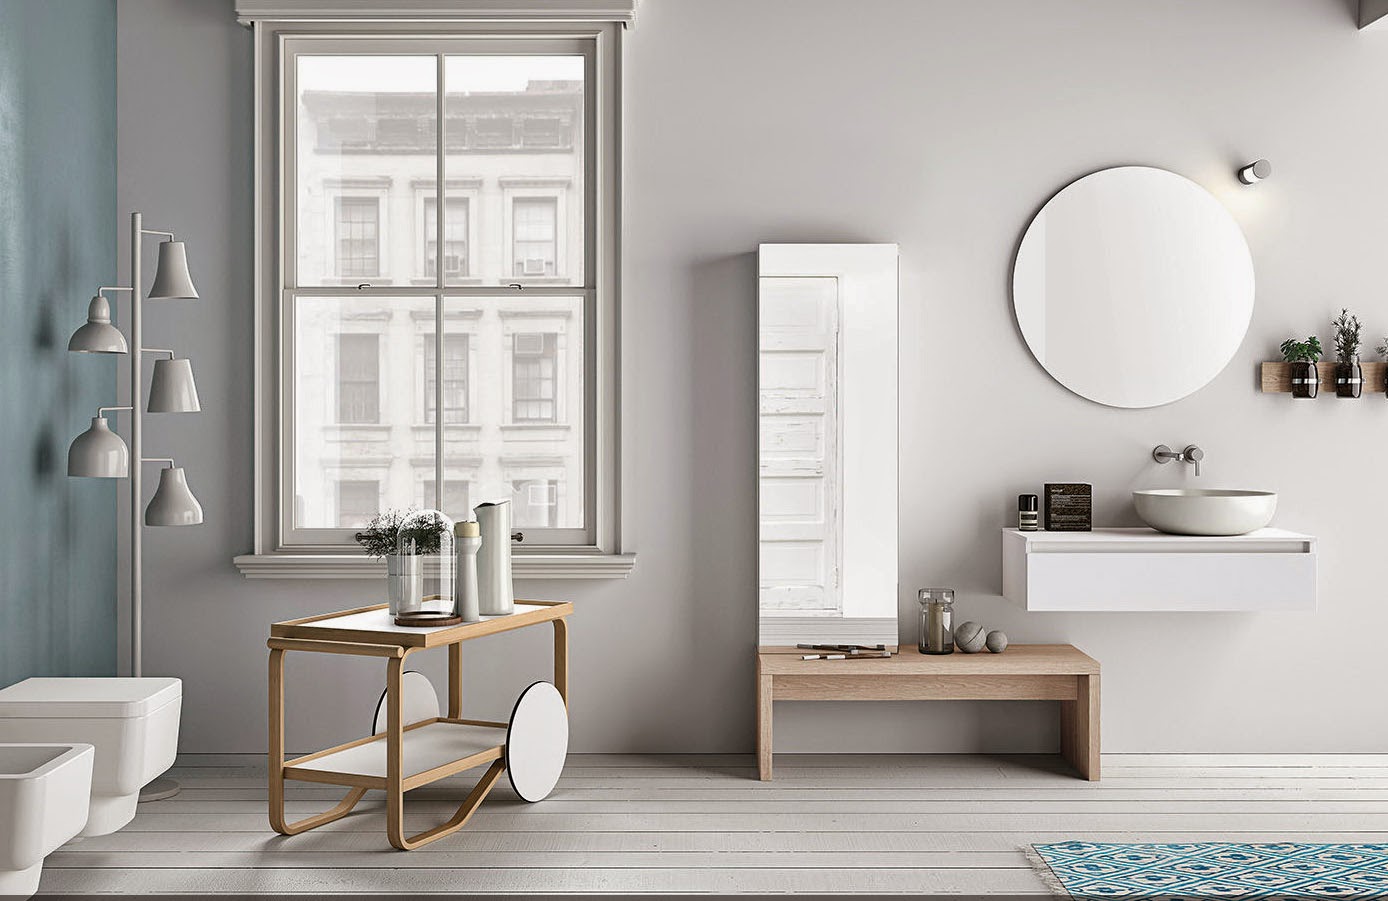 baños estilo nórdico Sevilla diseño interior reformar cuartos de baño servicios precio